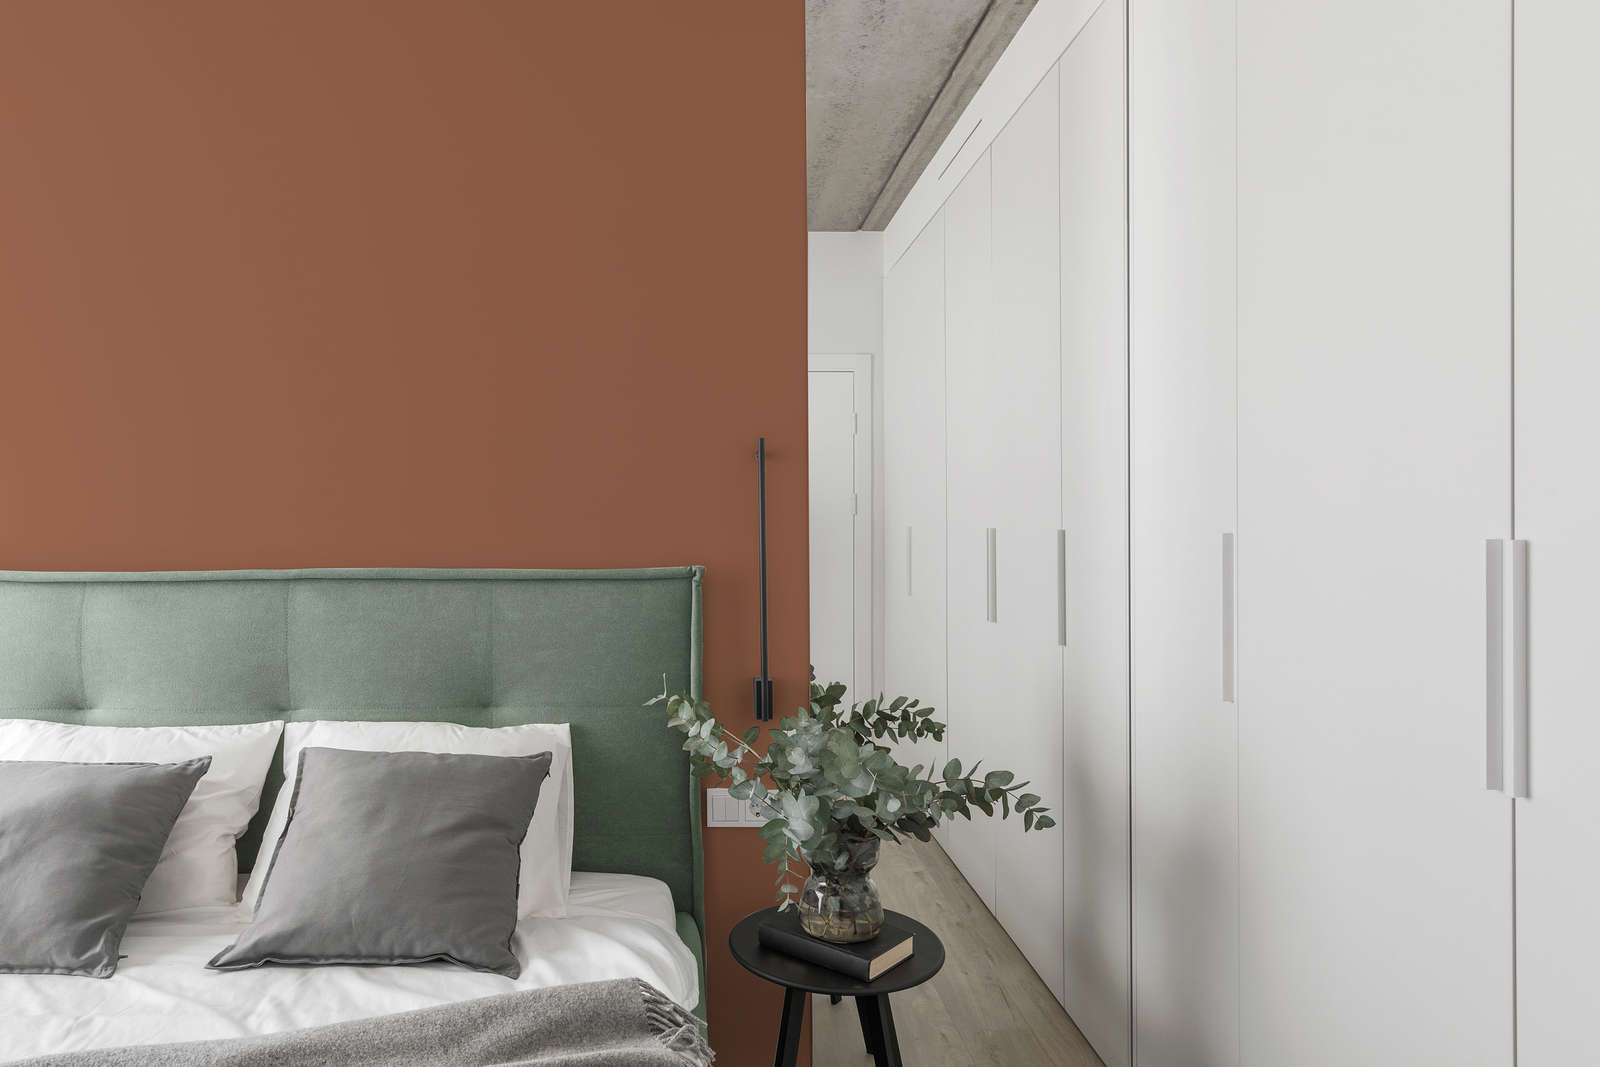             Premium Wandfarbe besänftigendes Terracotta »Pretty Peach« NW909 – 5 Liter
        